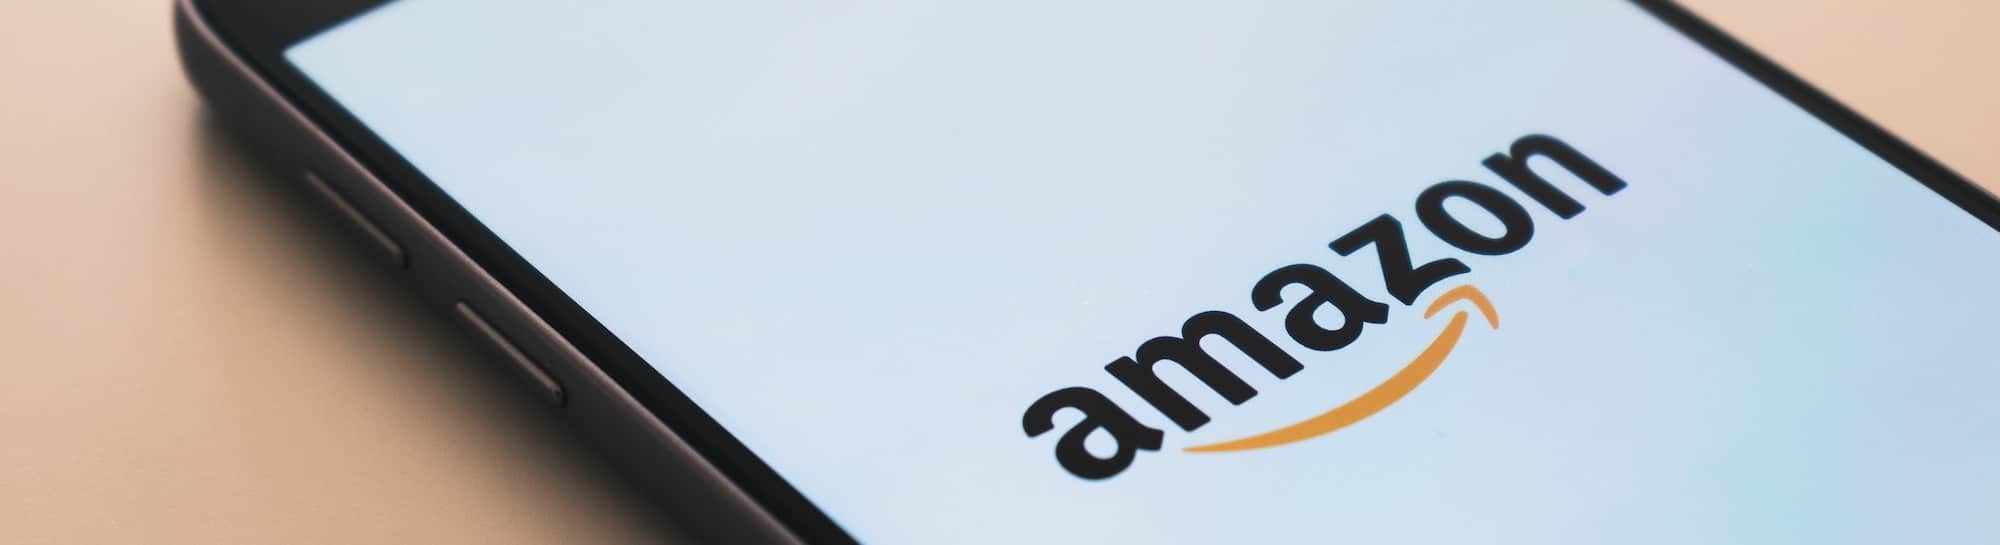 Amazon : Comment se rendre visible et développer ses ventes ?